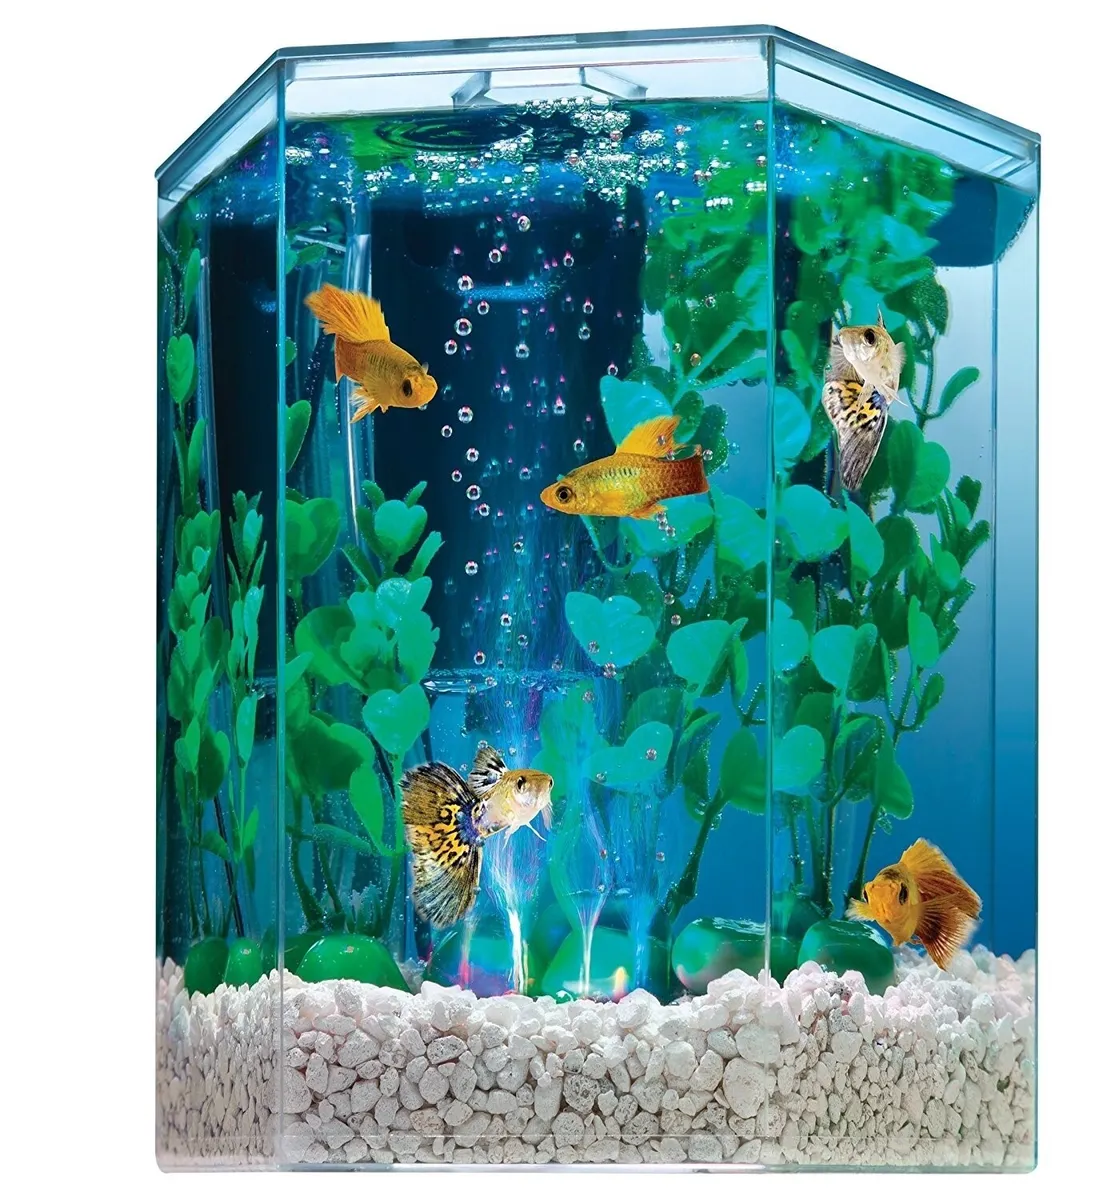 1 Gallon BEST Aquarium Kit Hexagon Shape Bubbling Color Changing